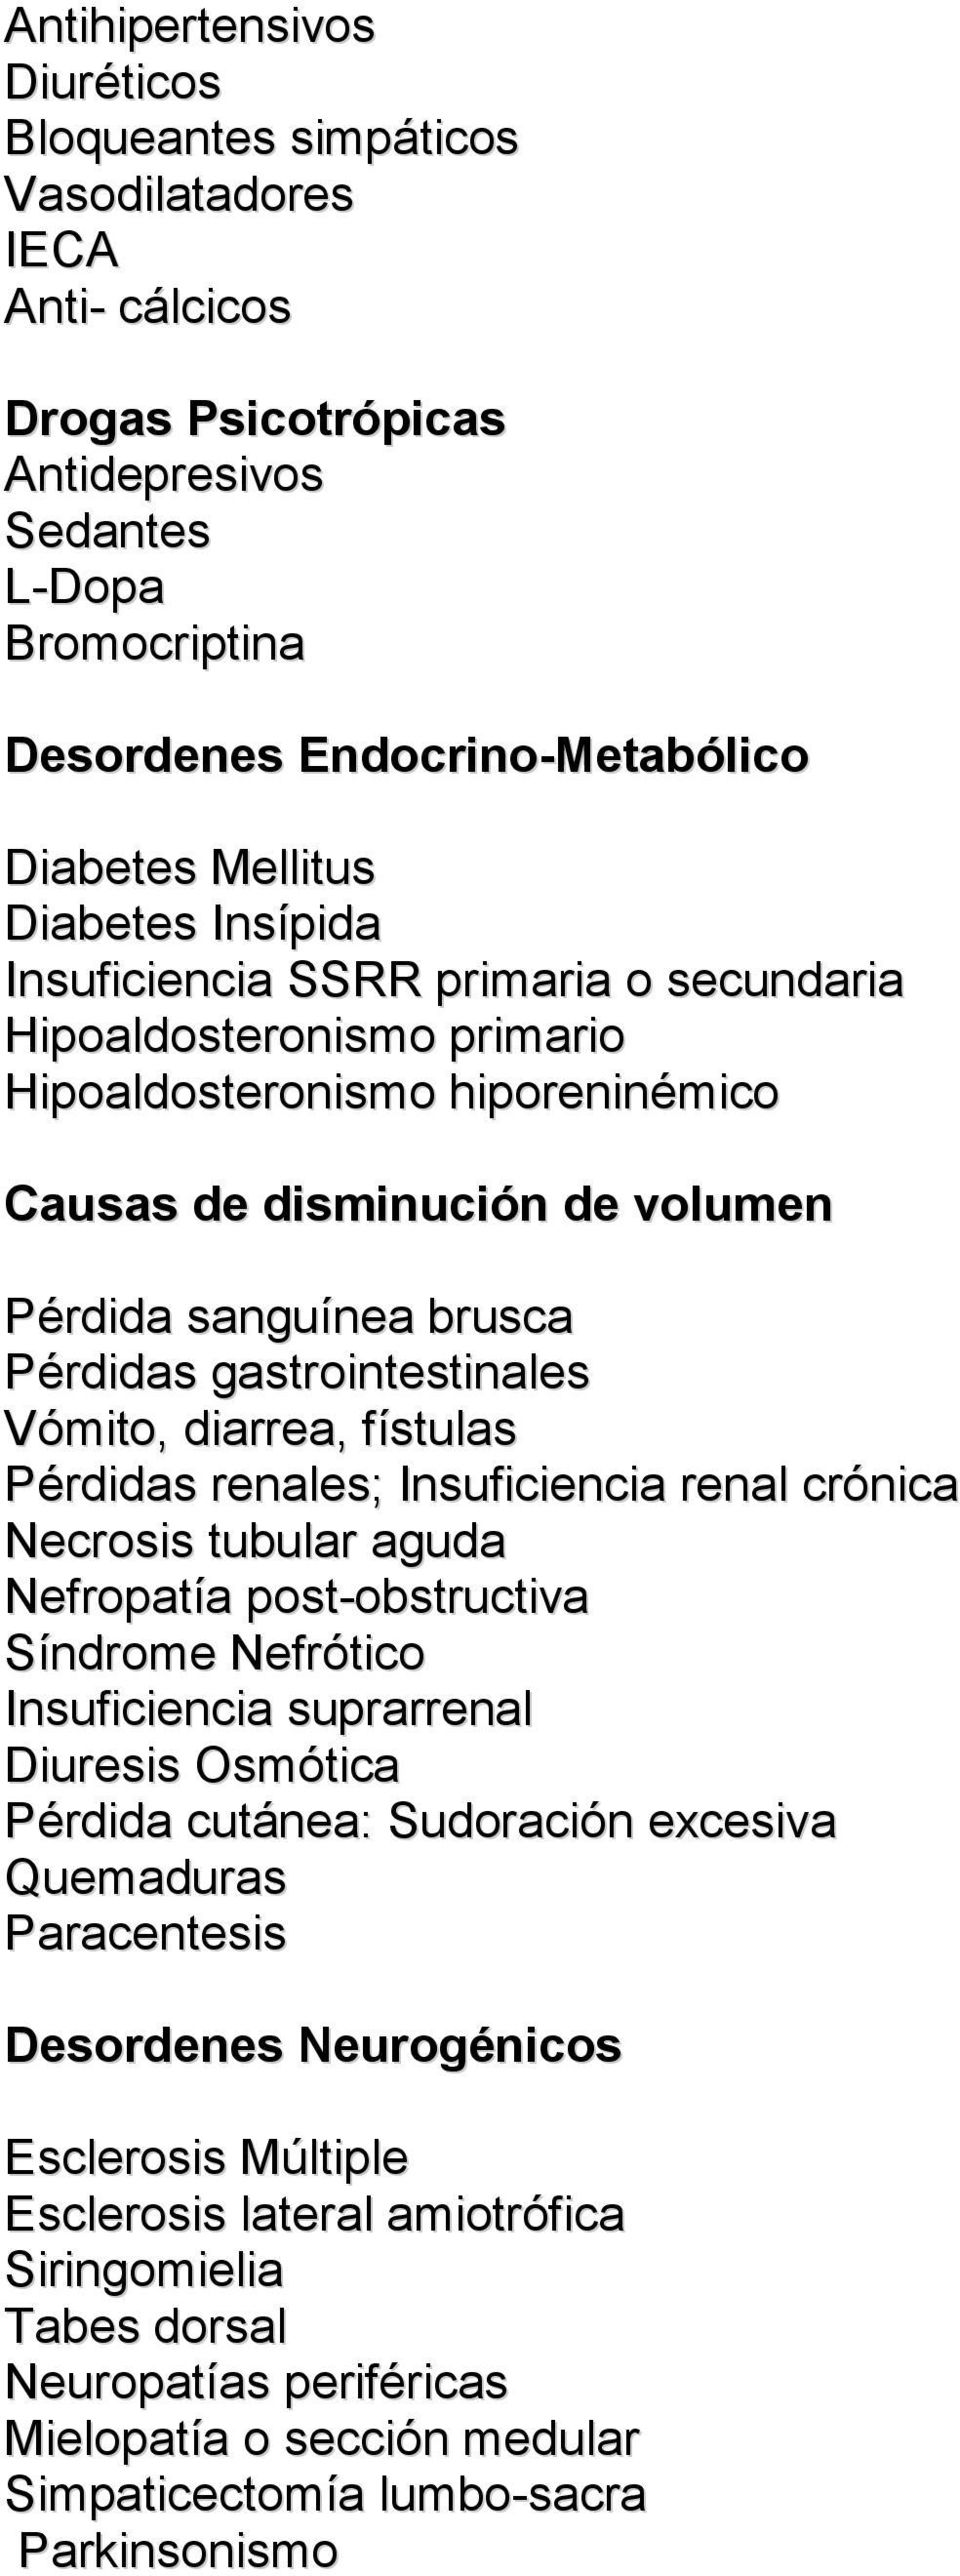 gastrointestinales Vómito, diarrea, fístulas Pérdidas renales; Insuficiencia renal crónica Necrosis tubular aguda Nefropatía post-obstructiva Síndrome Nefrótico Insuficiencia suprarrenal Diuresis